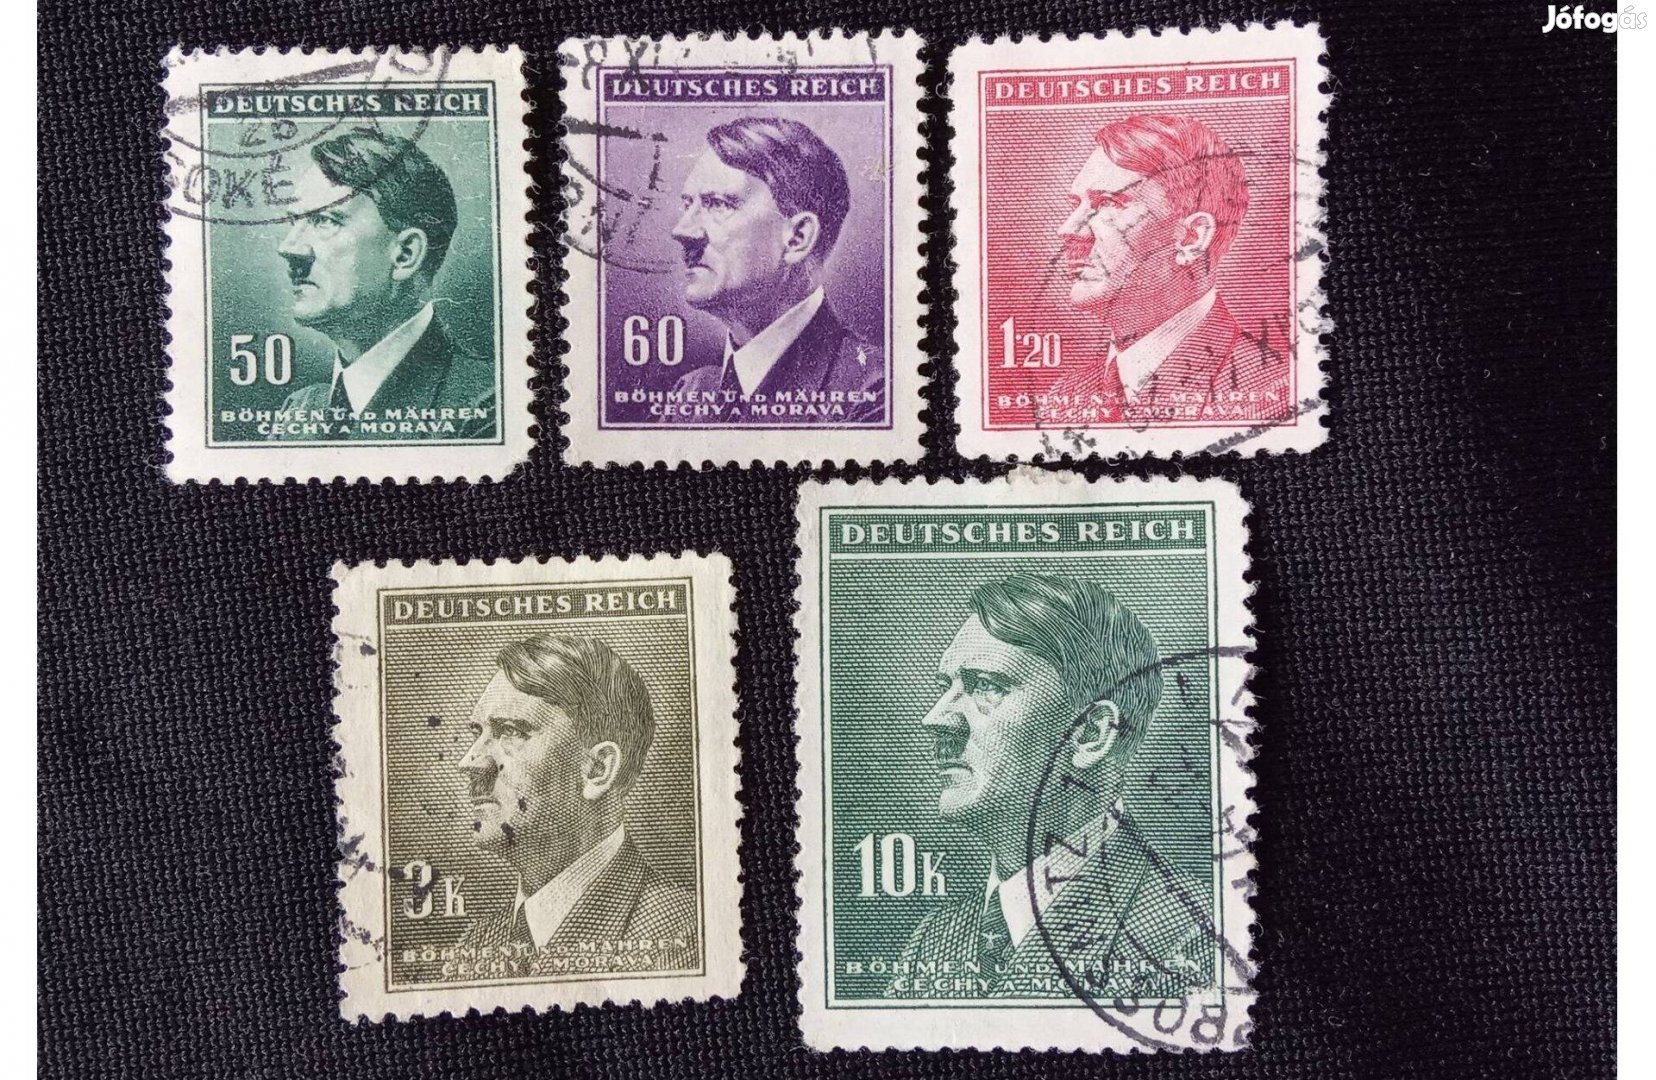 Deutsches Reich 1942 Adolf Hitler, 1889-1945 Cseh-és Morvaország